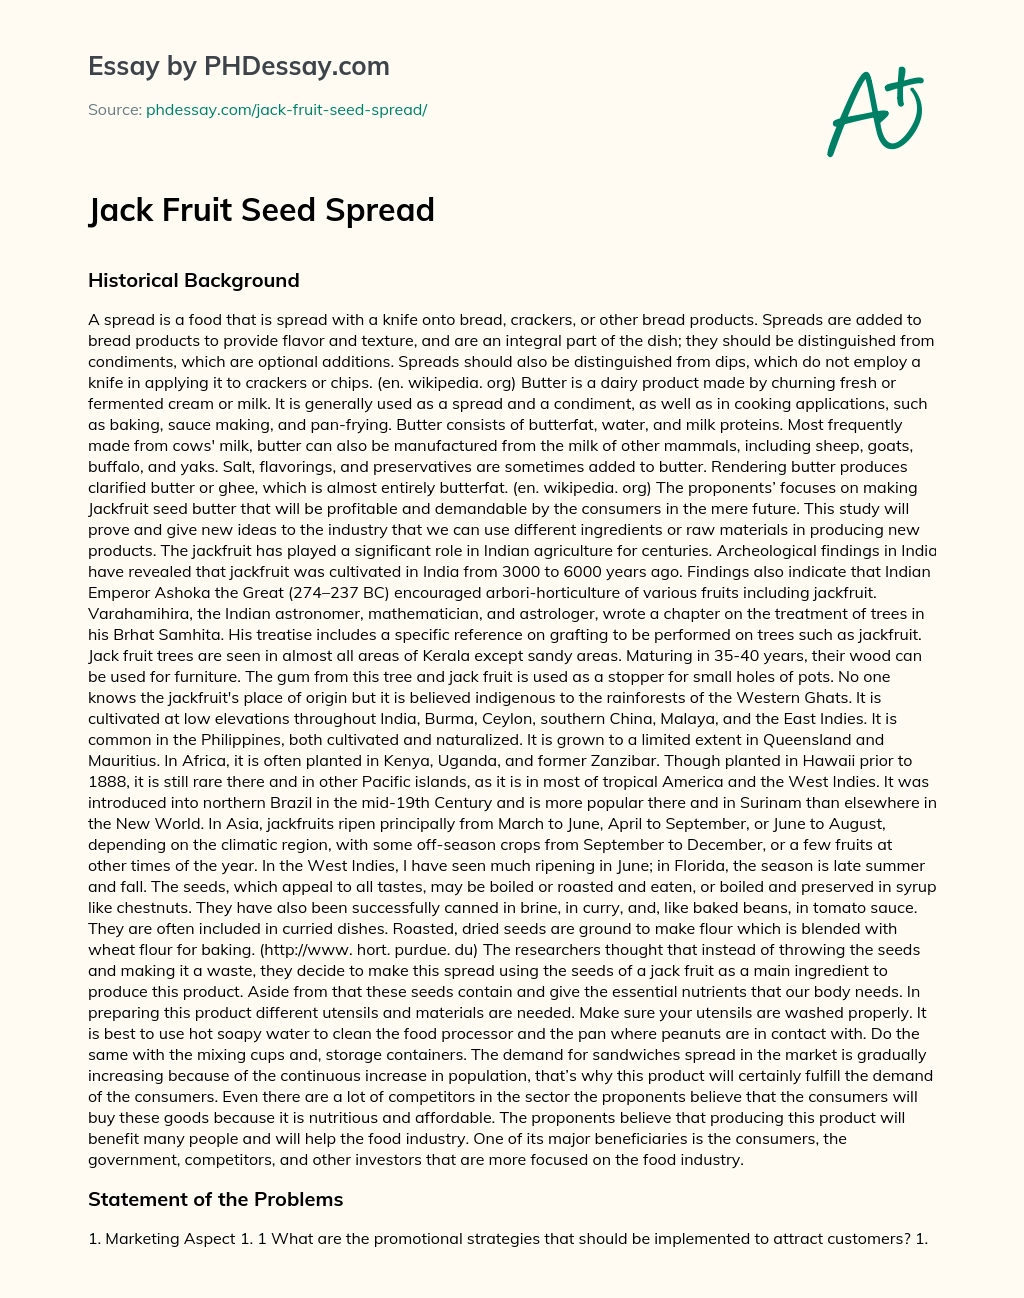 Jack Fruit Seed Spread essay